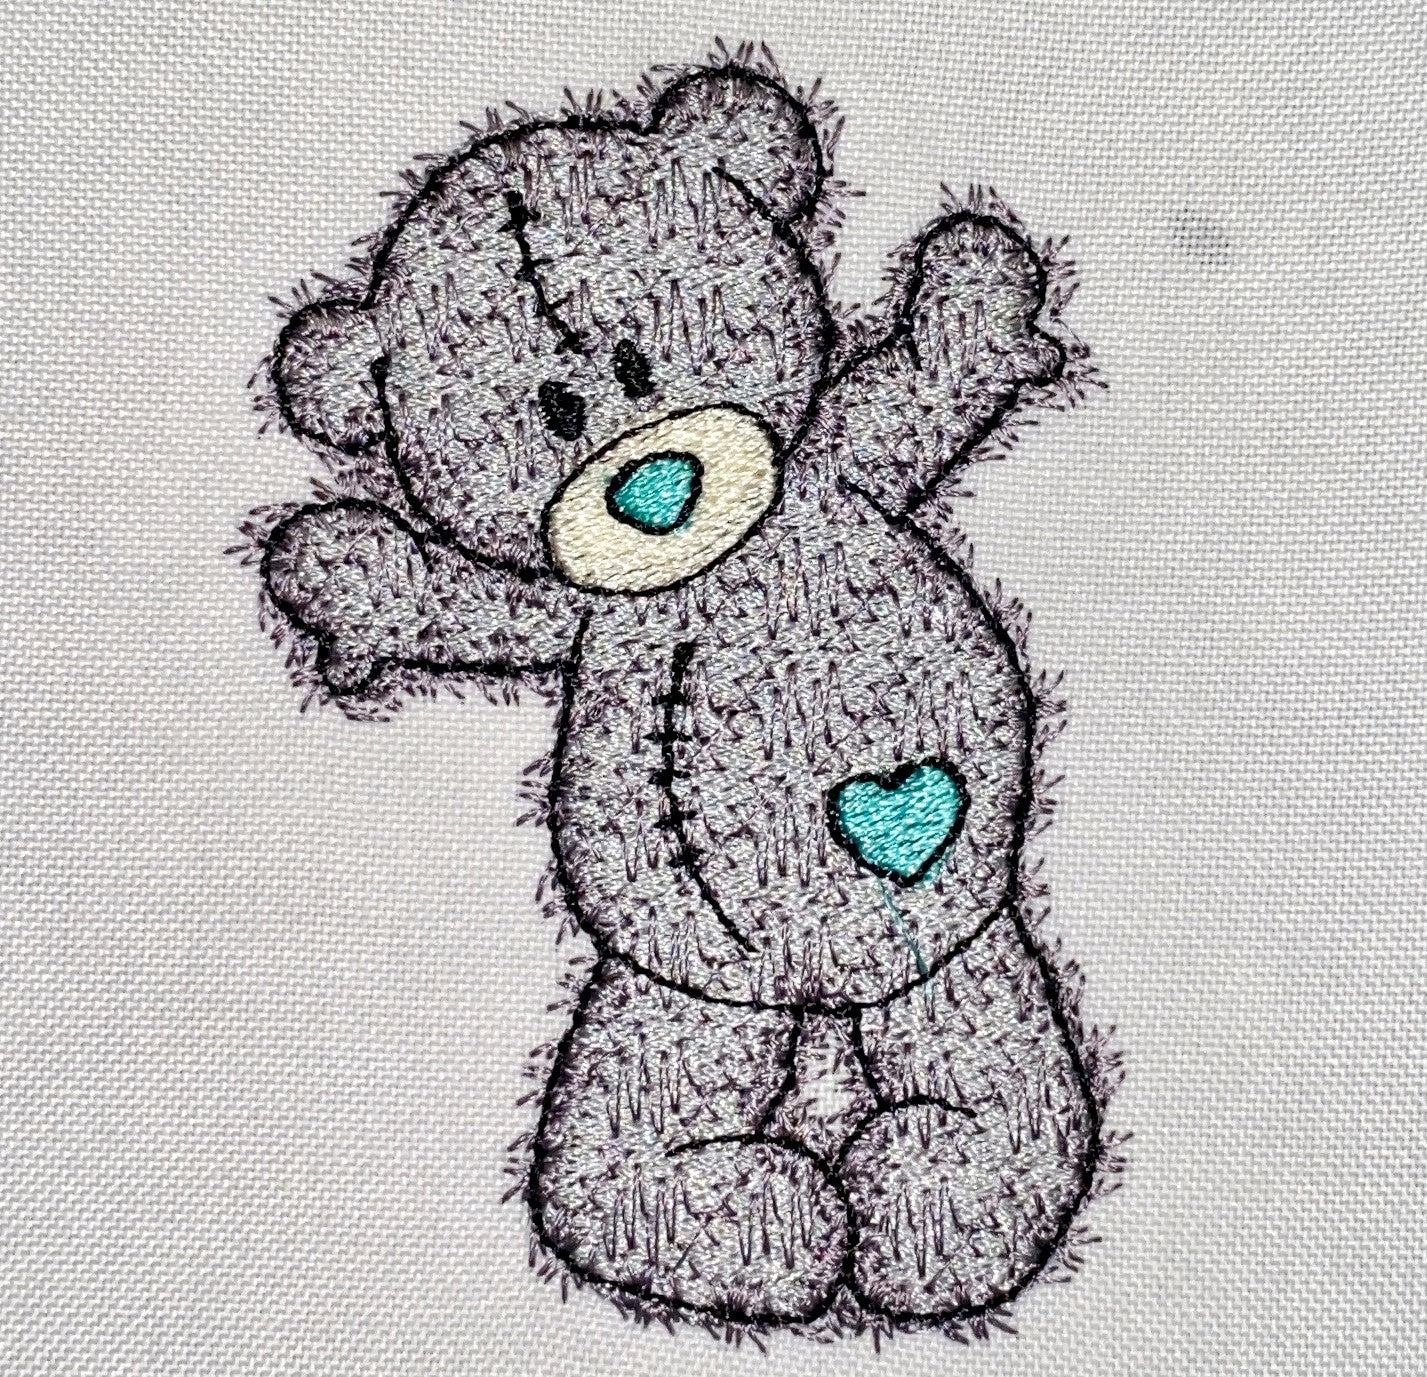 TEDDY BEAR 2